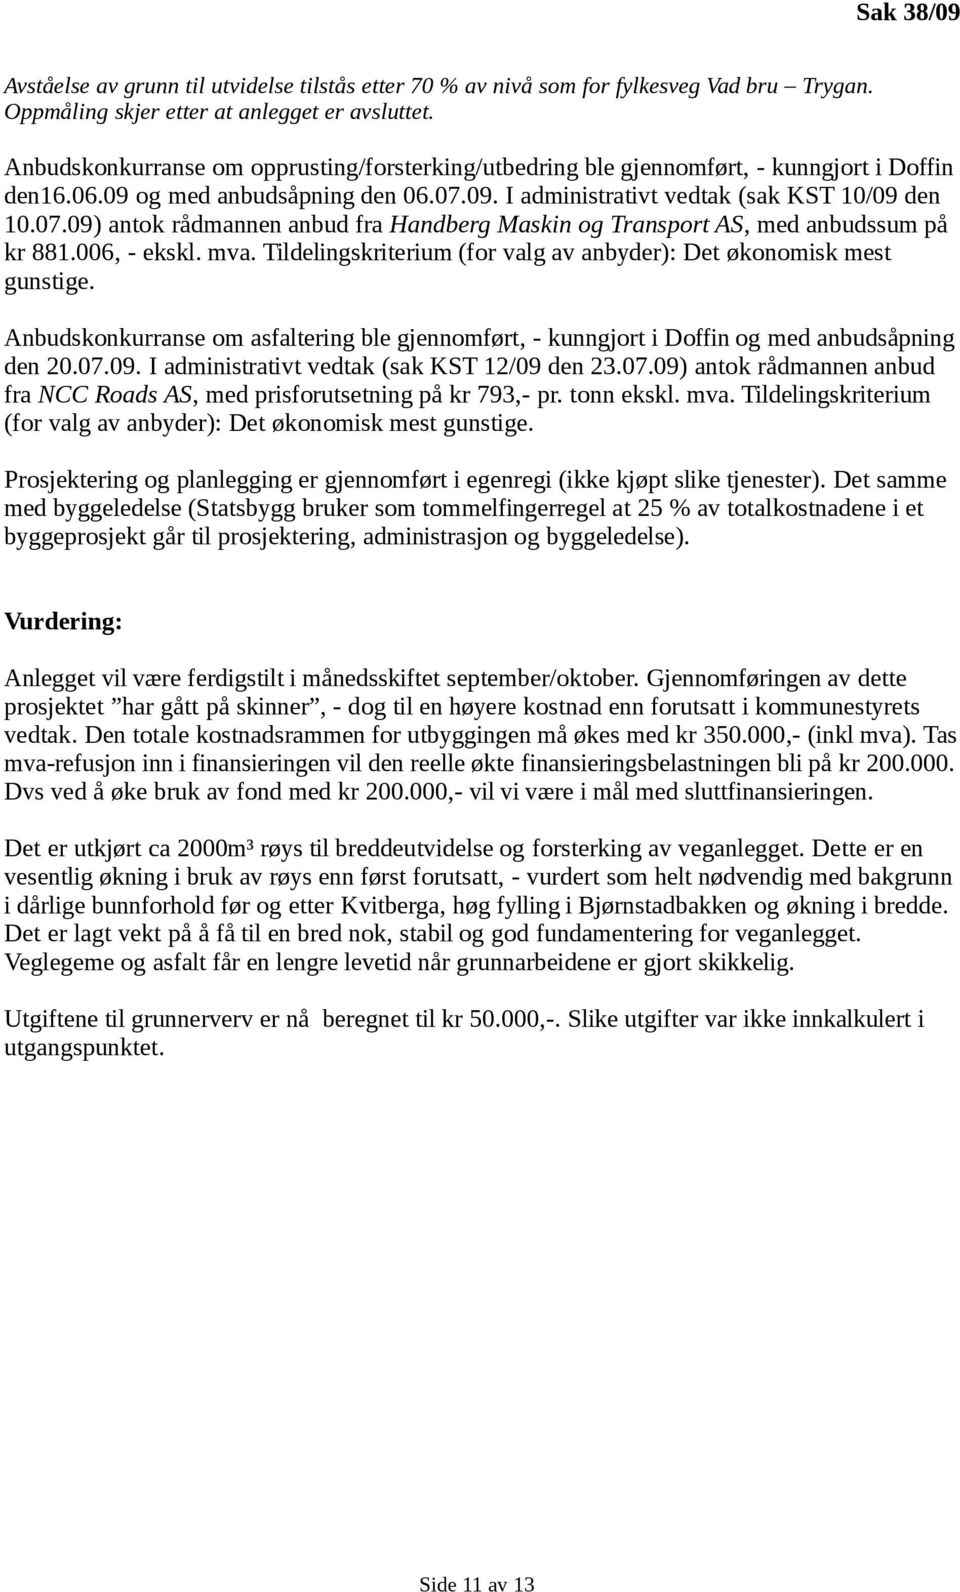 09. I administrativt vedtak (sak KST 10/09 den 10.07.09) antok rådmannen anbud fra Handberg Maskin og Transport AS, med anbudssum på kr 881.006, - ekskl. mva.